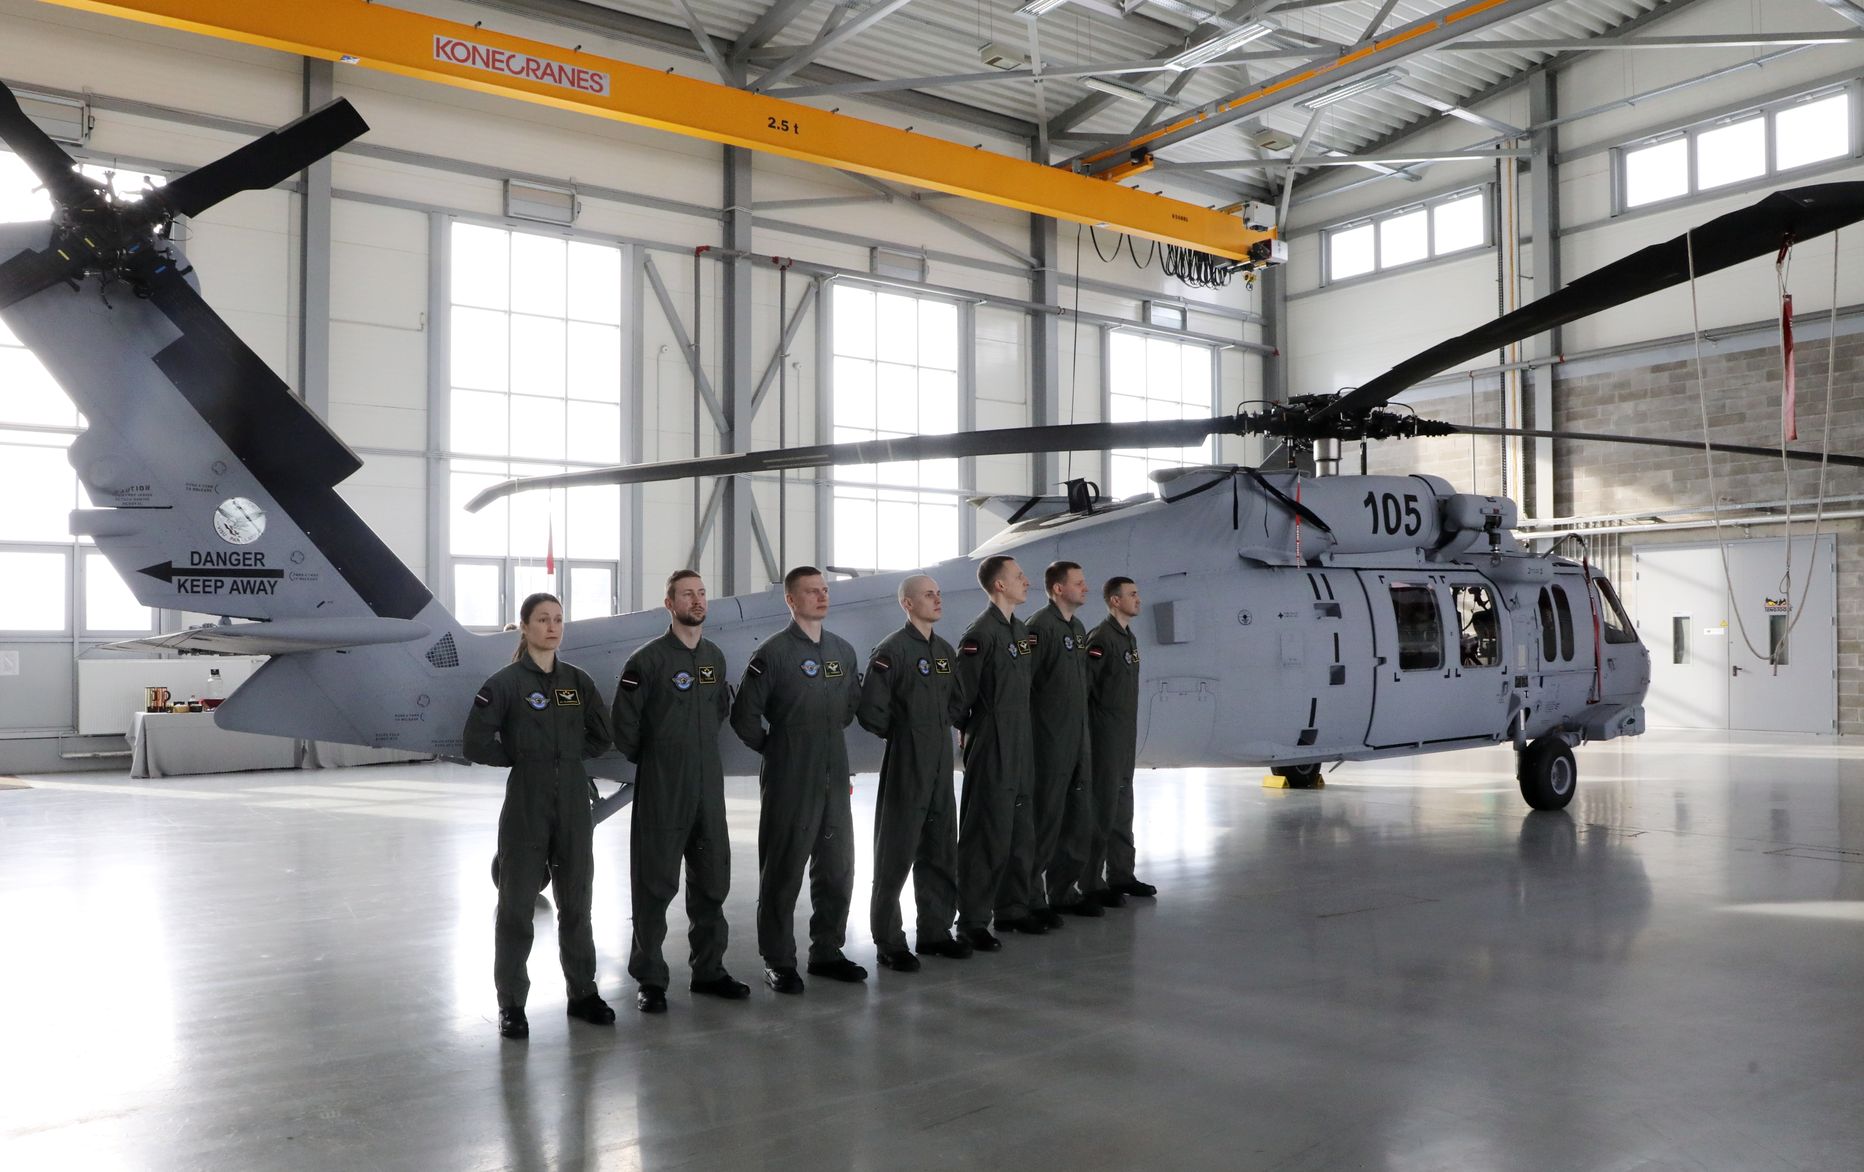 Nacionālo bruņoto spēku Aviācijas bāzē Lielvārdē notiek pirmo divu jauno helikopteru UH-60M "Black Hawk" svinīgajā pieņemšanas ceremonija .